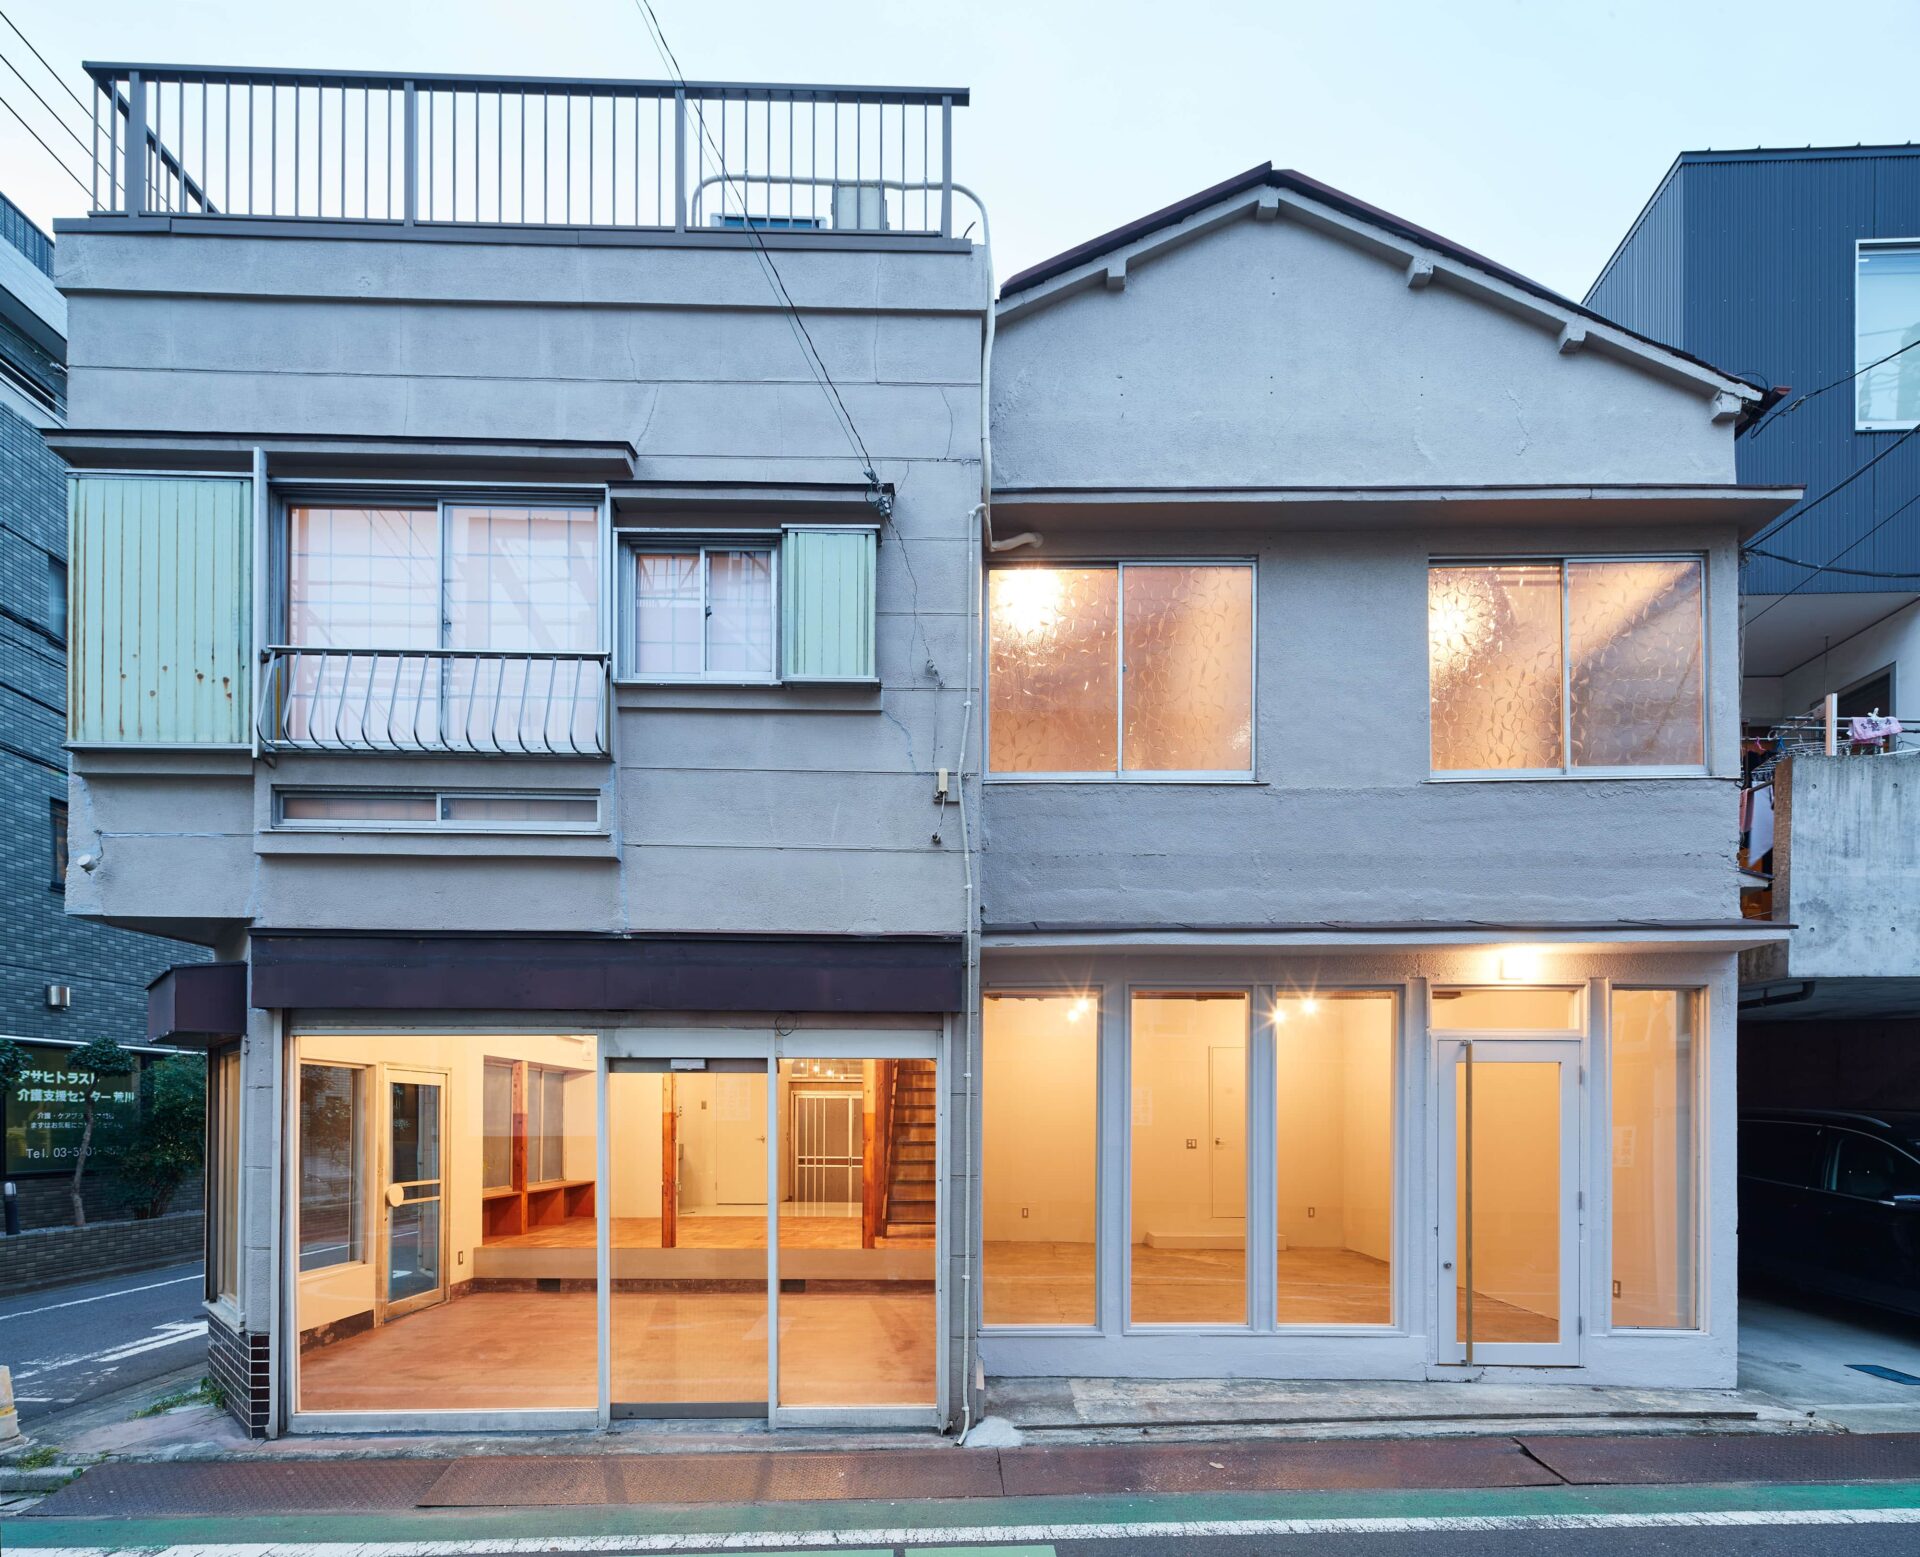 東京R不動産の紹介でルーヴィスが借り上げた、荒川区の商店街沿いの店舗付き住宅。10年近く空き家になっていた